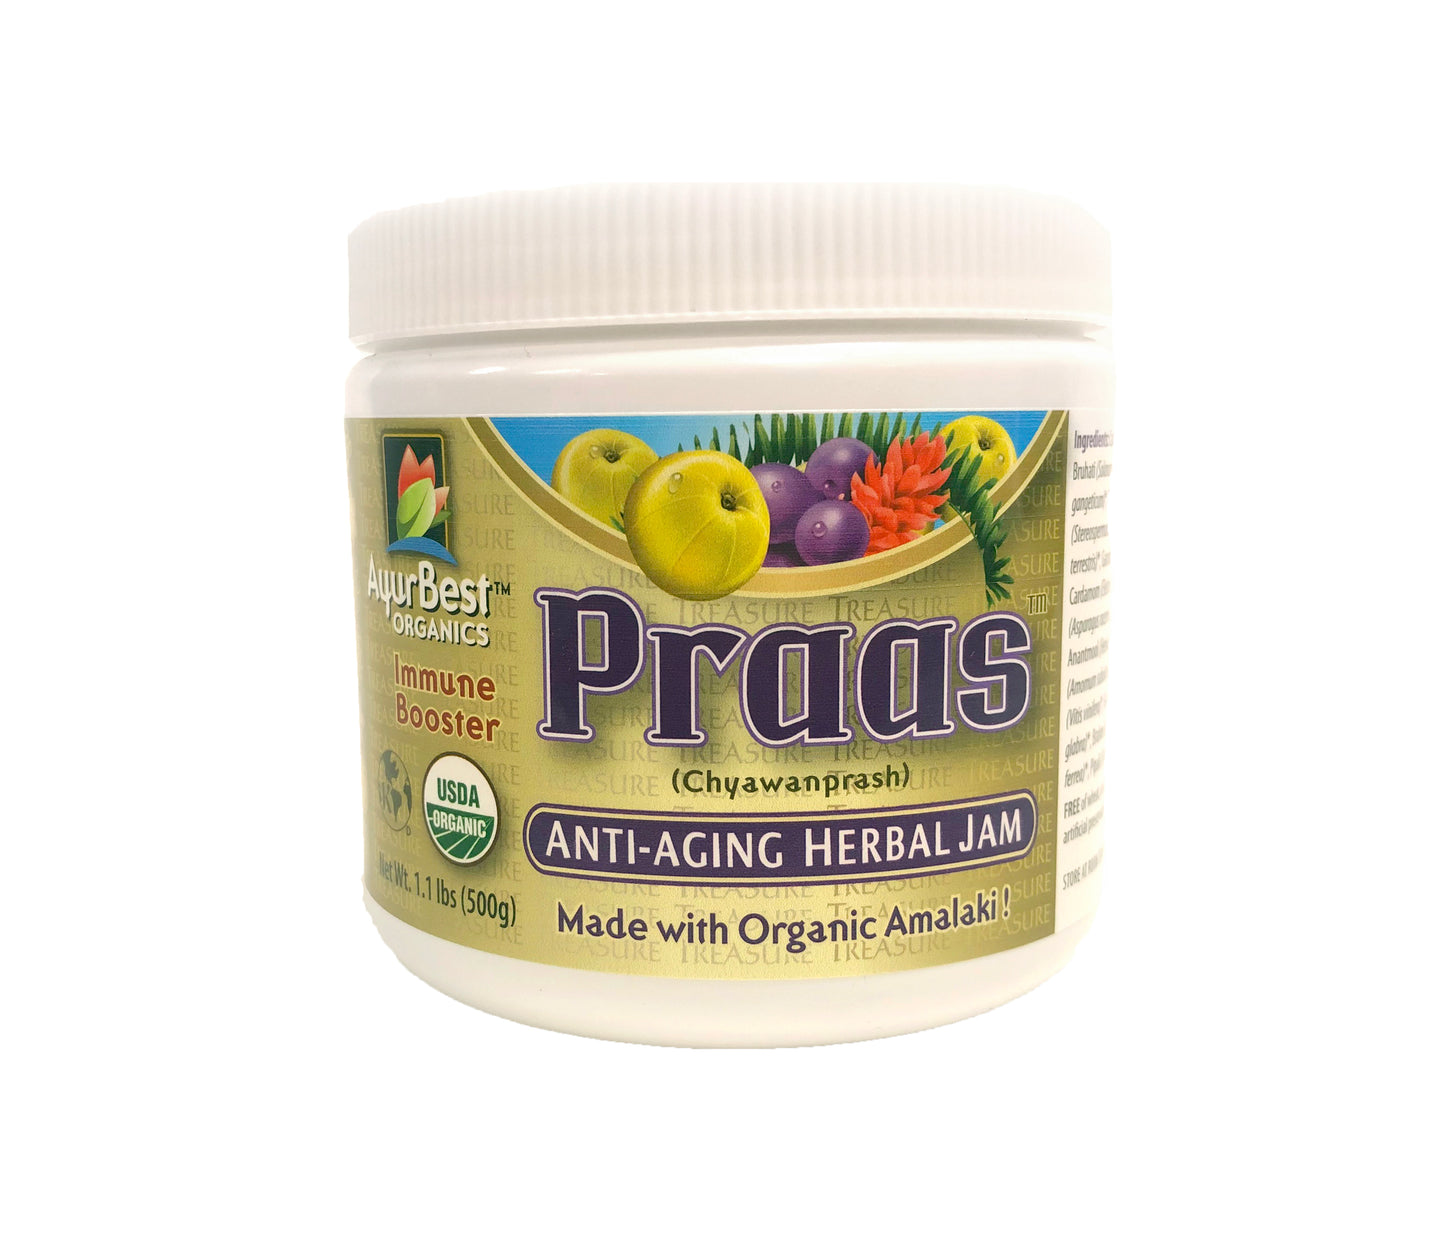 PRAAS Organic Chyawanprash, Herbal Jam - 1.1lb (500g) Jar